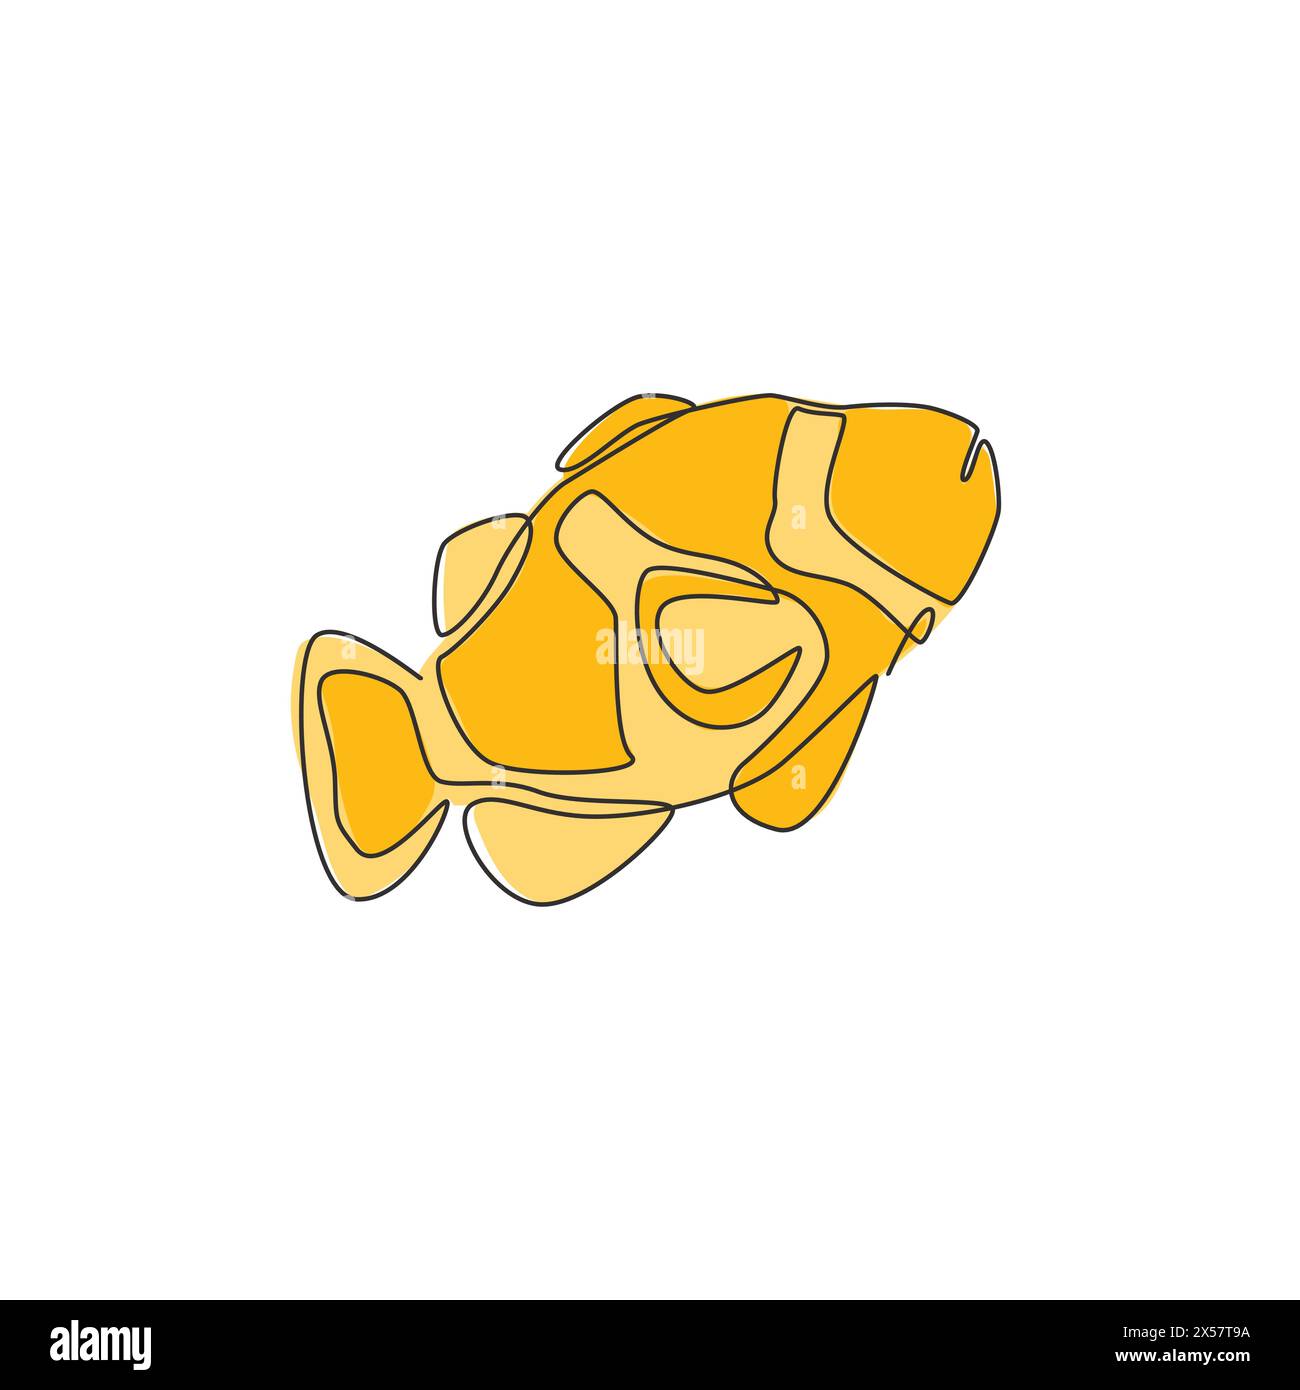 Disegno a linea singola continua di pesci pagliaccio di bellezza per l'identità del logo acquatico. Splendida mascotte anemonefish per l'icona dello spettacolo sott'acqua. Una linea Illustrazione Vettoriale